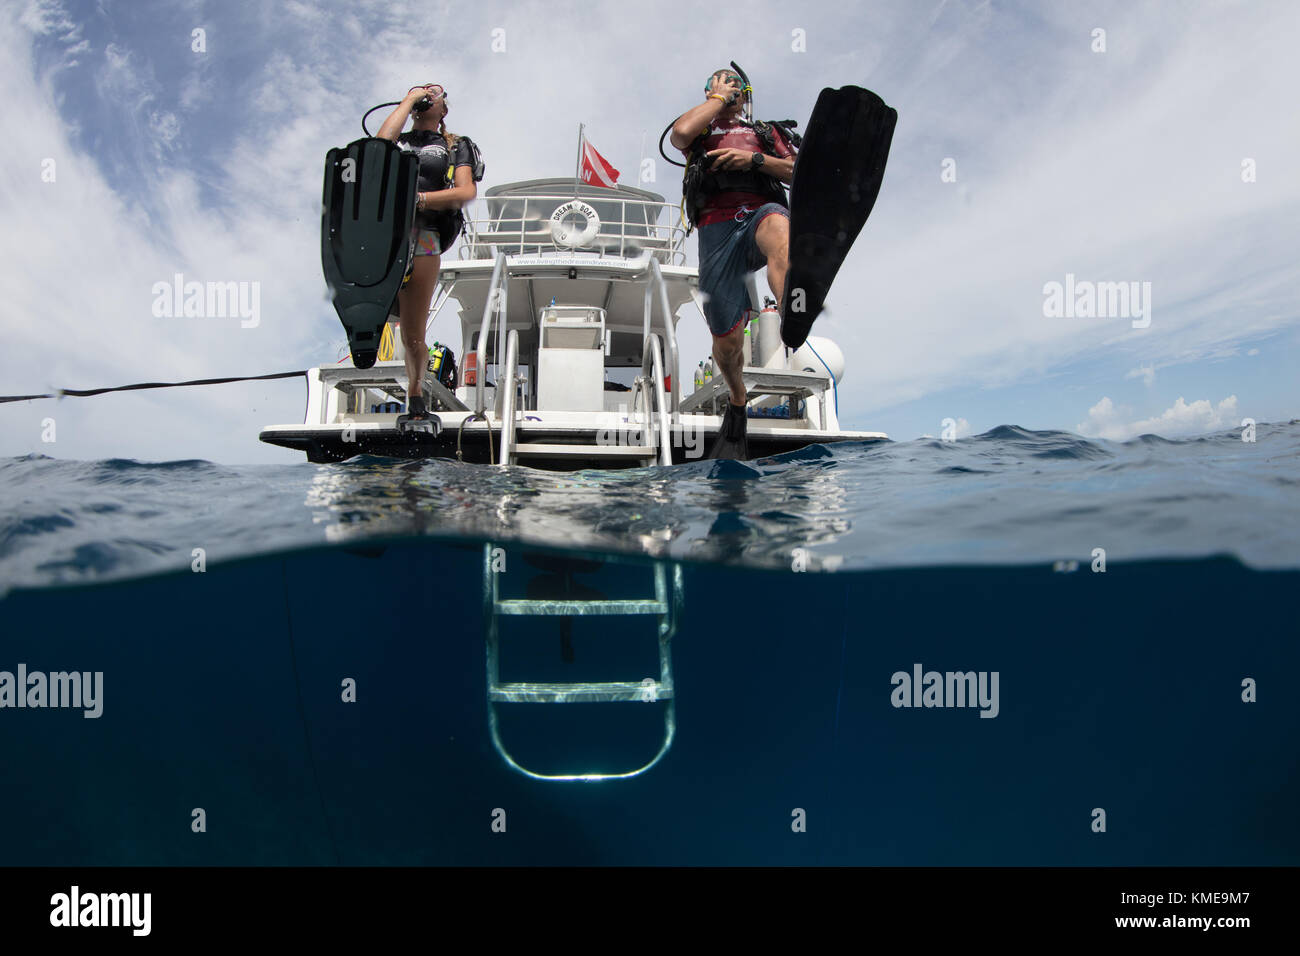 Les plongeurs se retrouvent dans l'eau faisant pas de géant. Banque D'Images